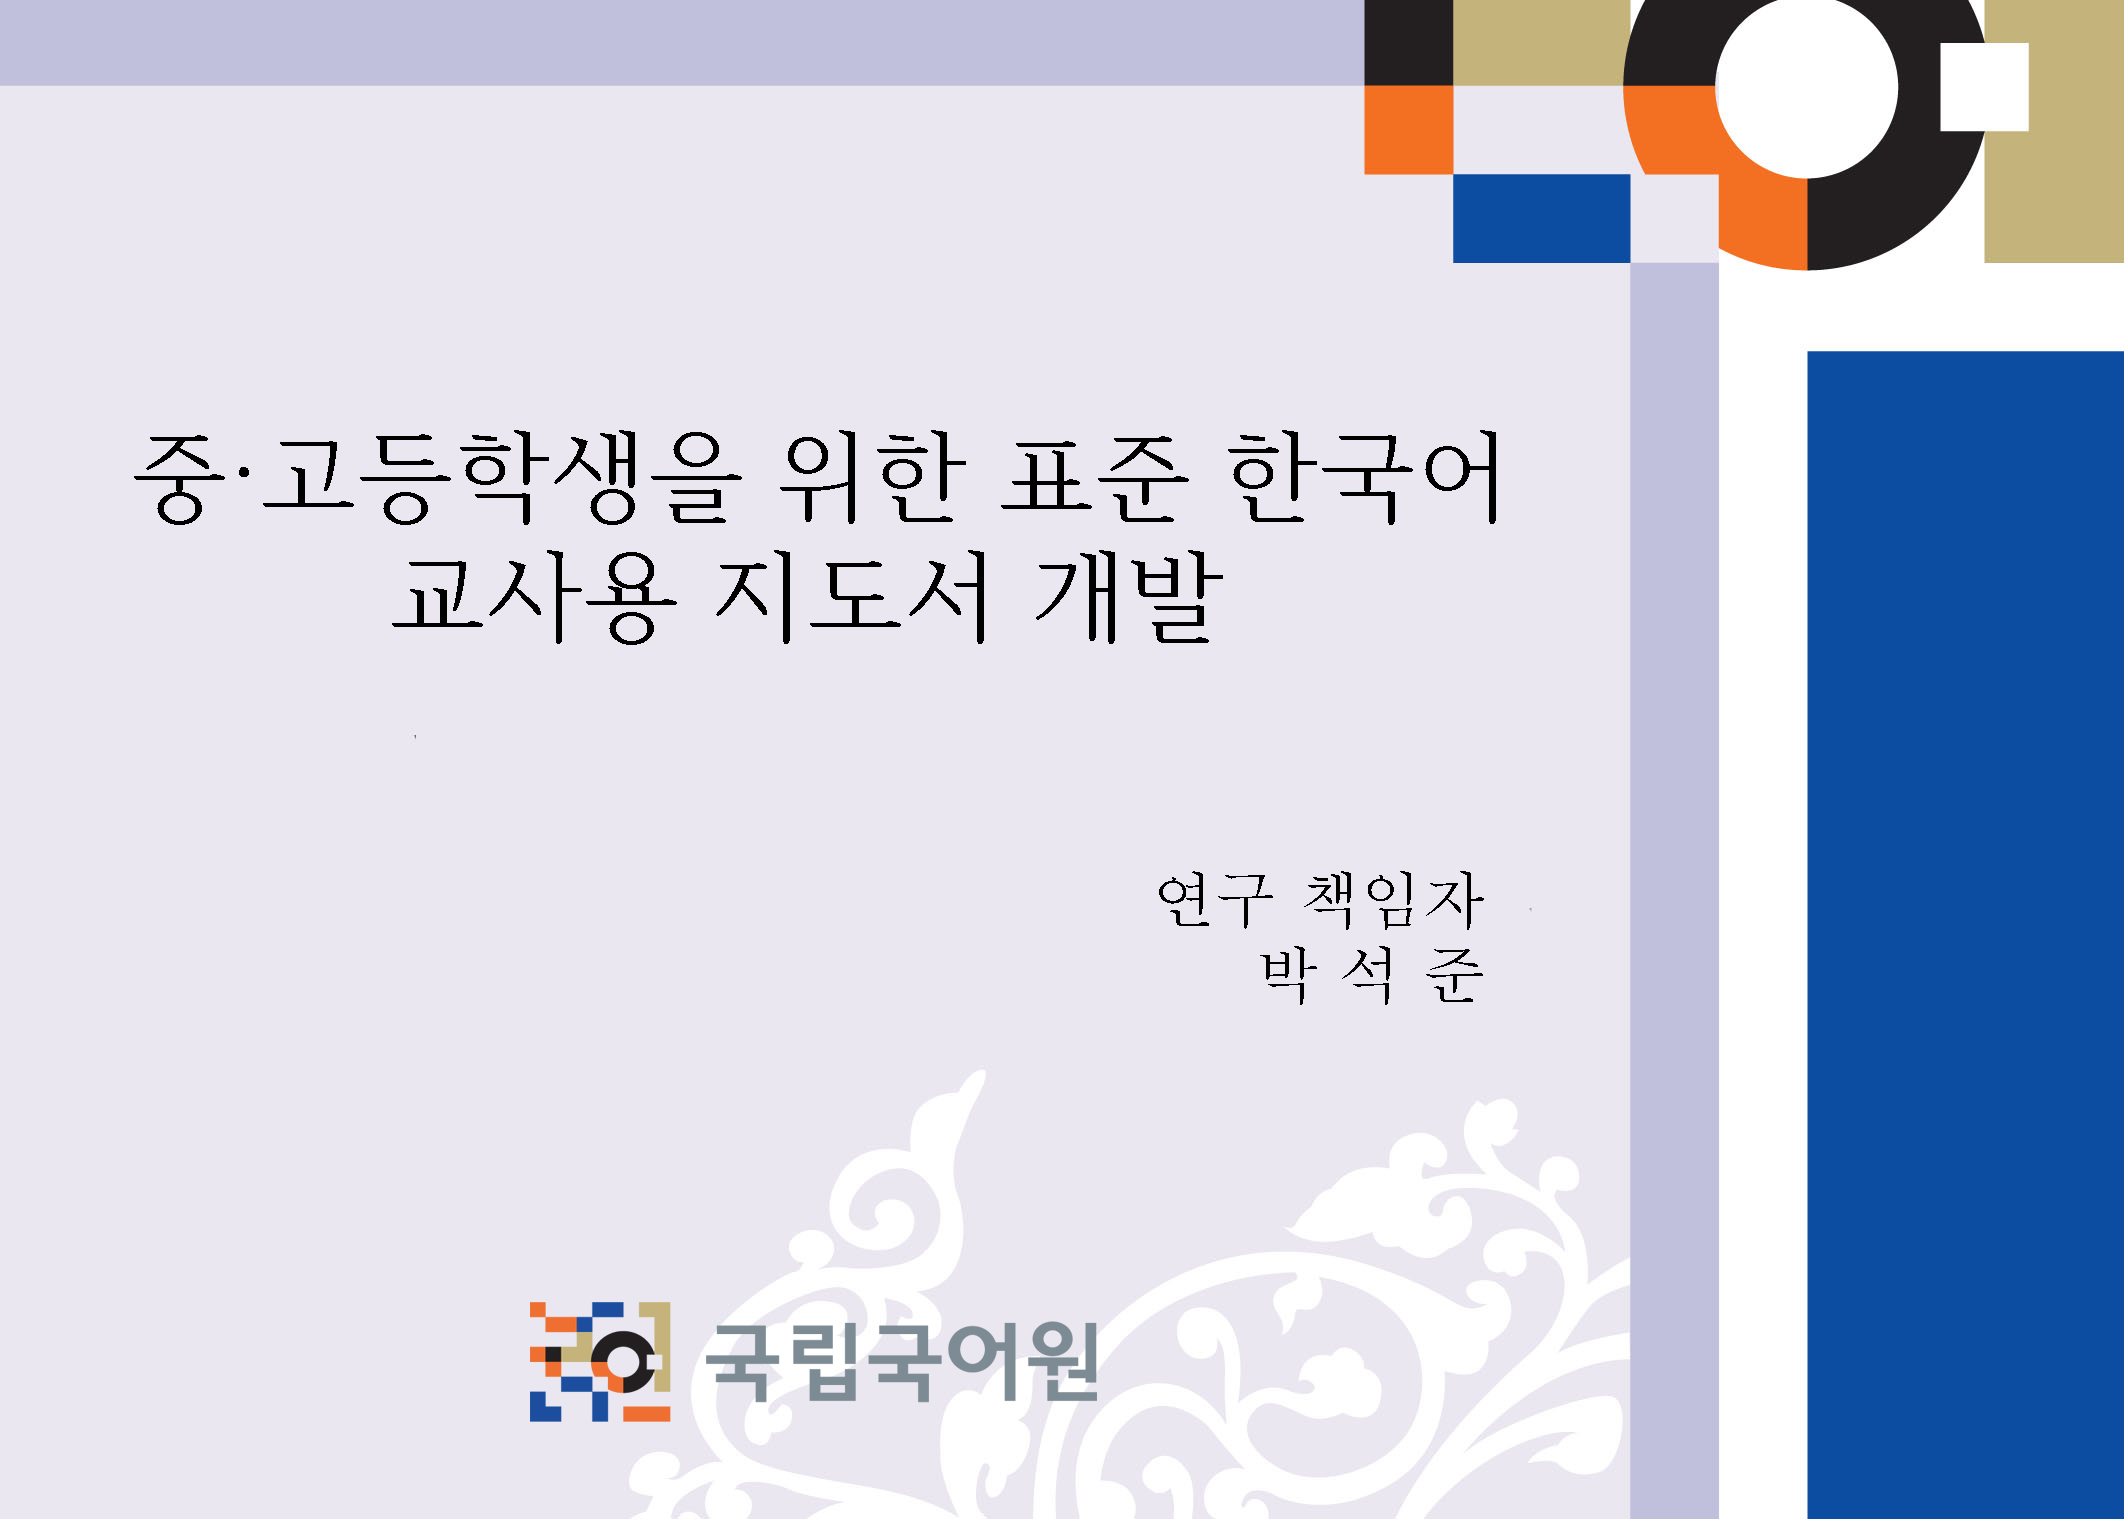 중, 고등학생을 위한 표준 한국어 교사용 지도서 개발 보고서